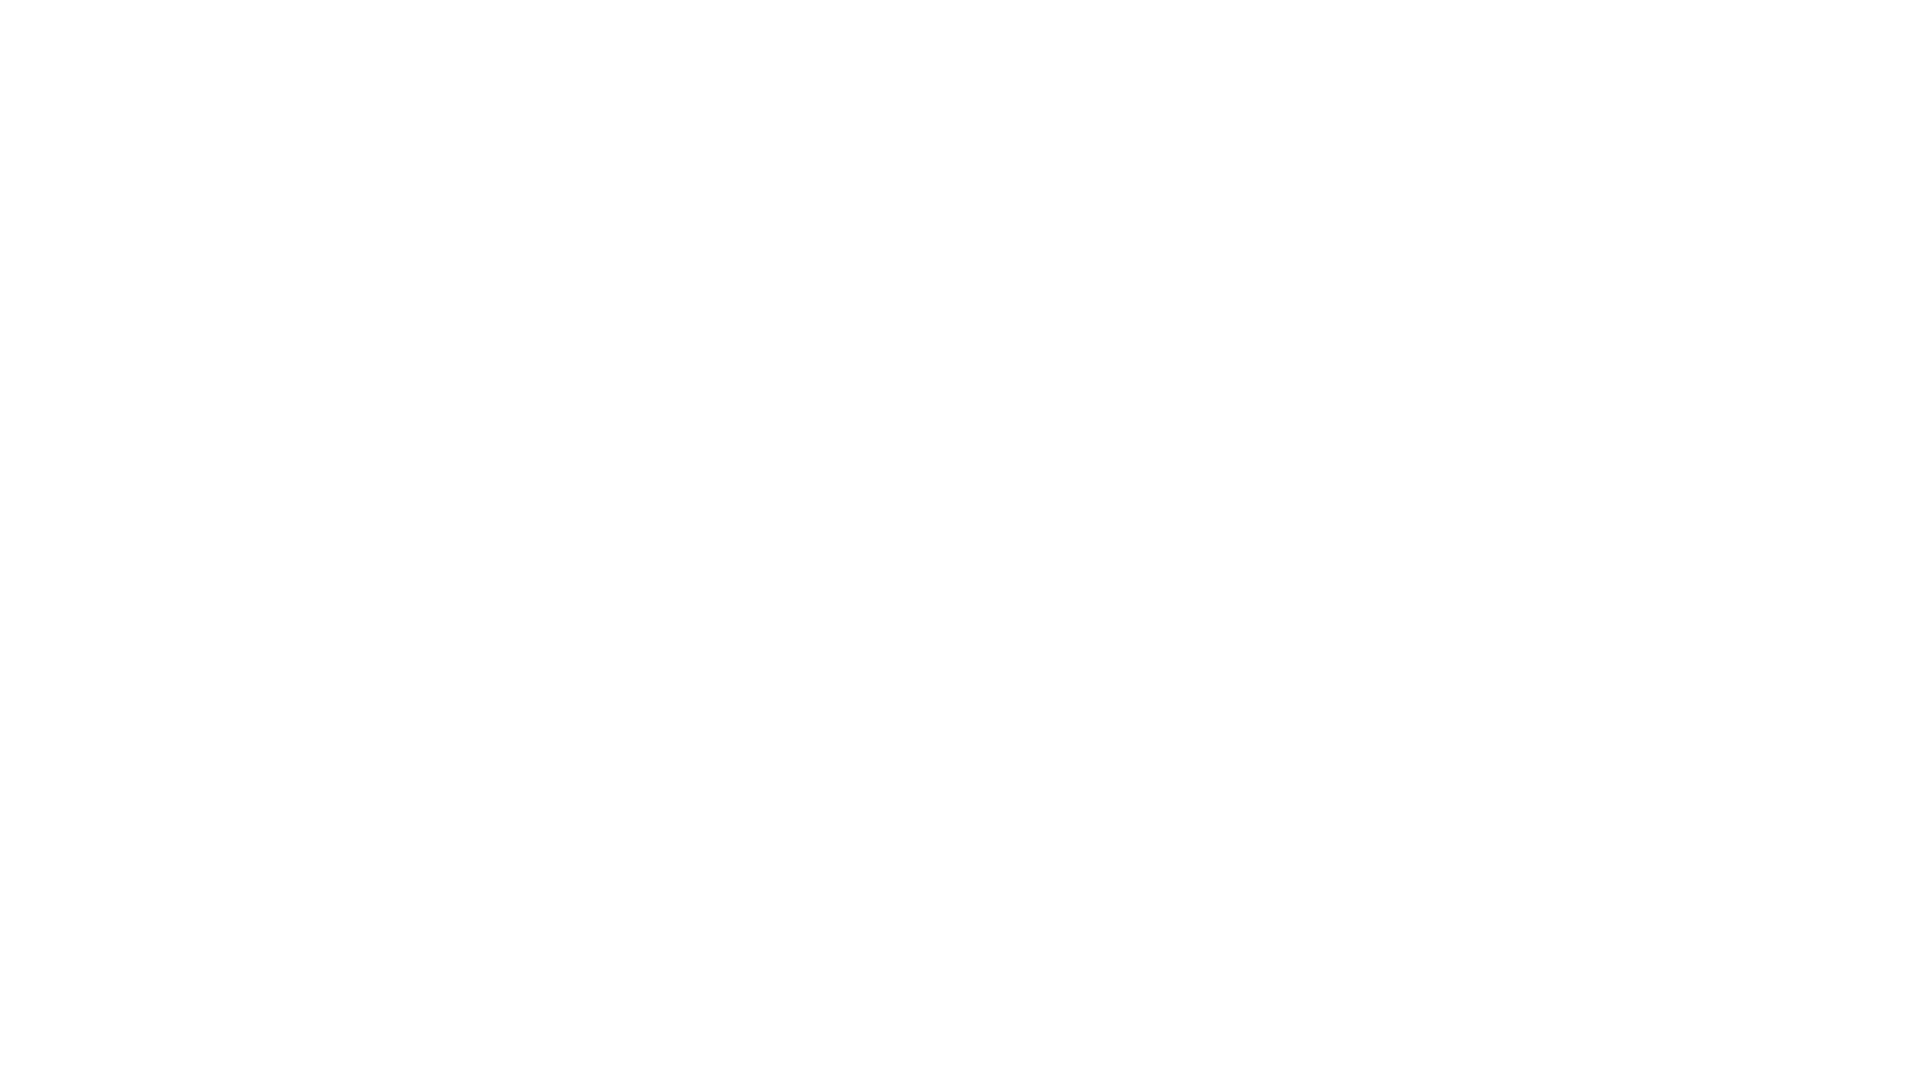 PIPE PRESS